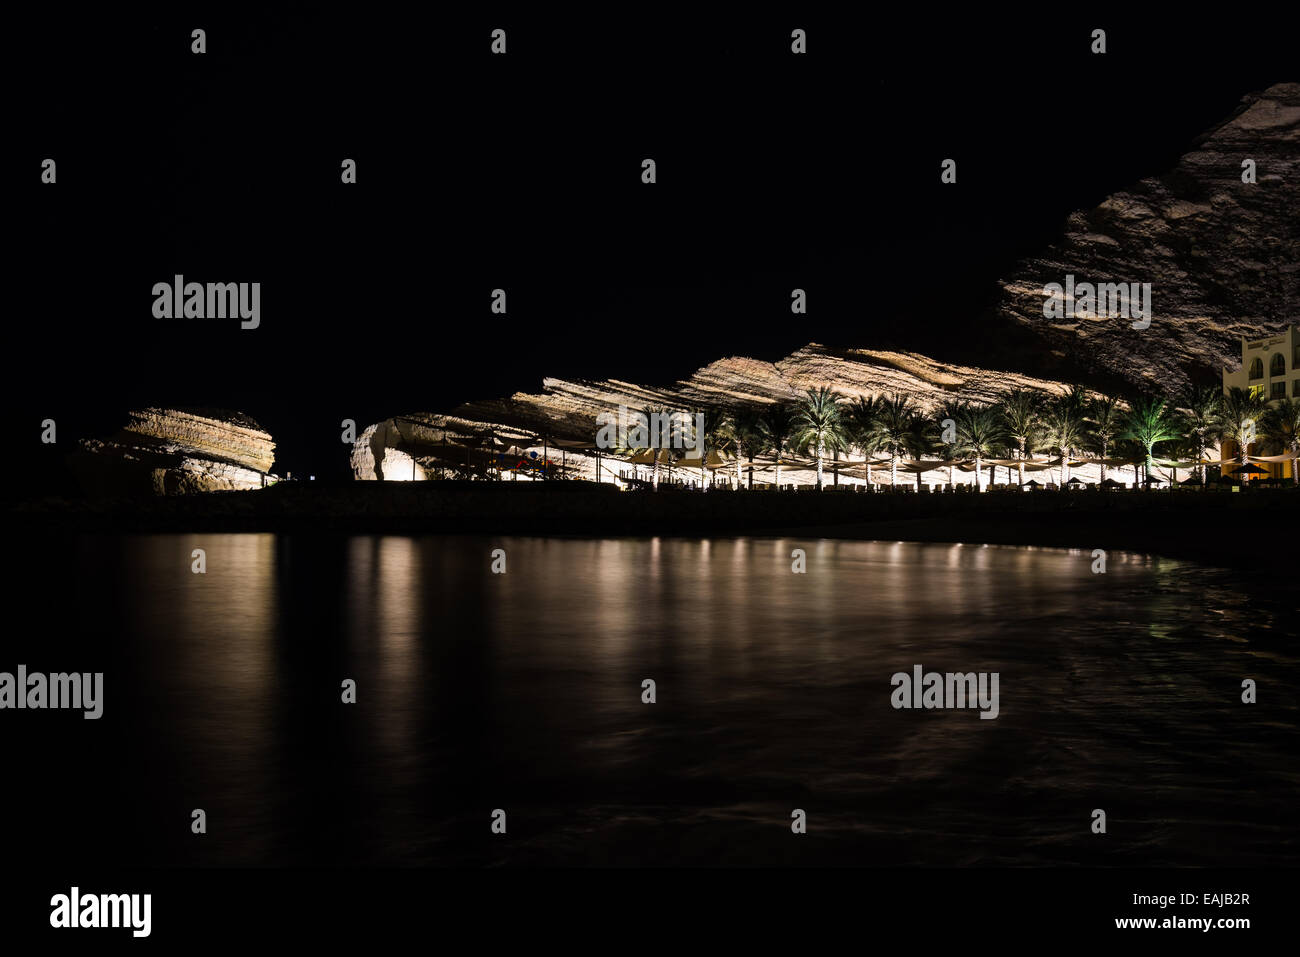 Roccia calcarea illuminata di notte in un resort di lusso dal Mare Arabico. Oman. Foto Stock